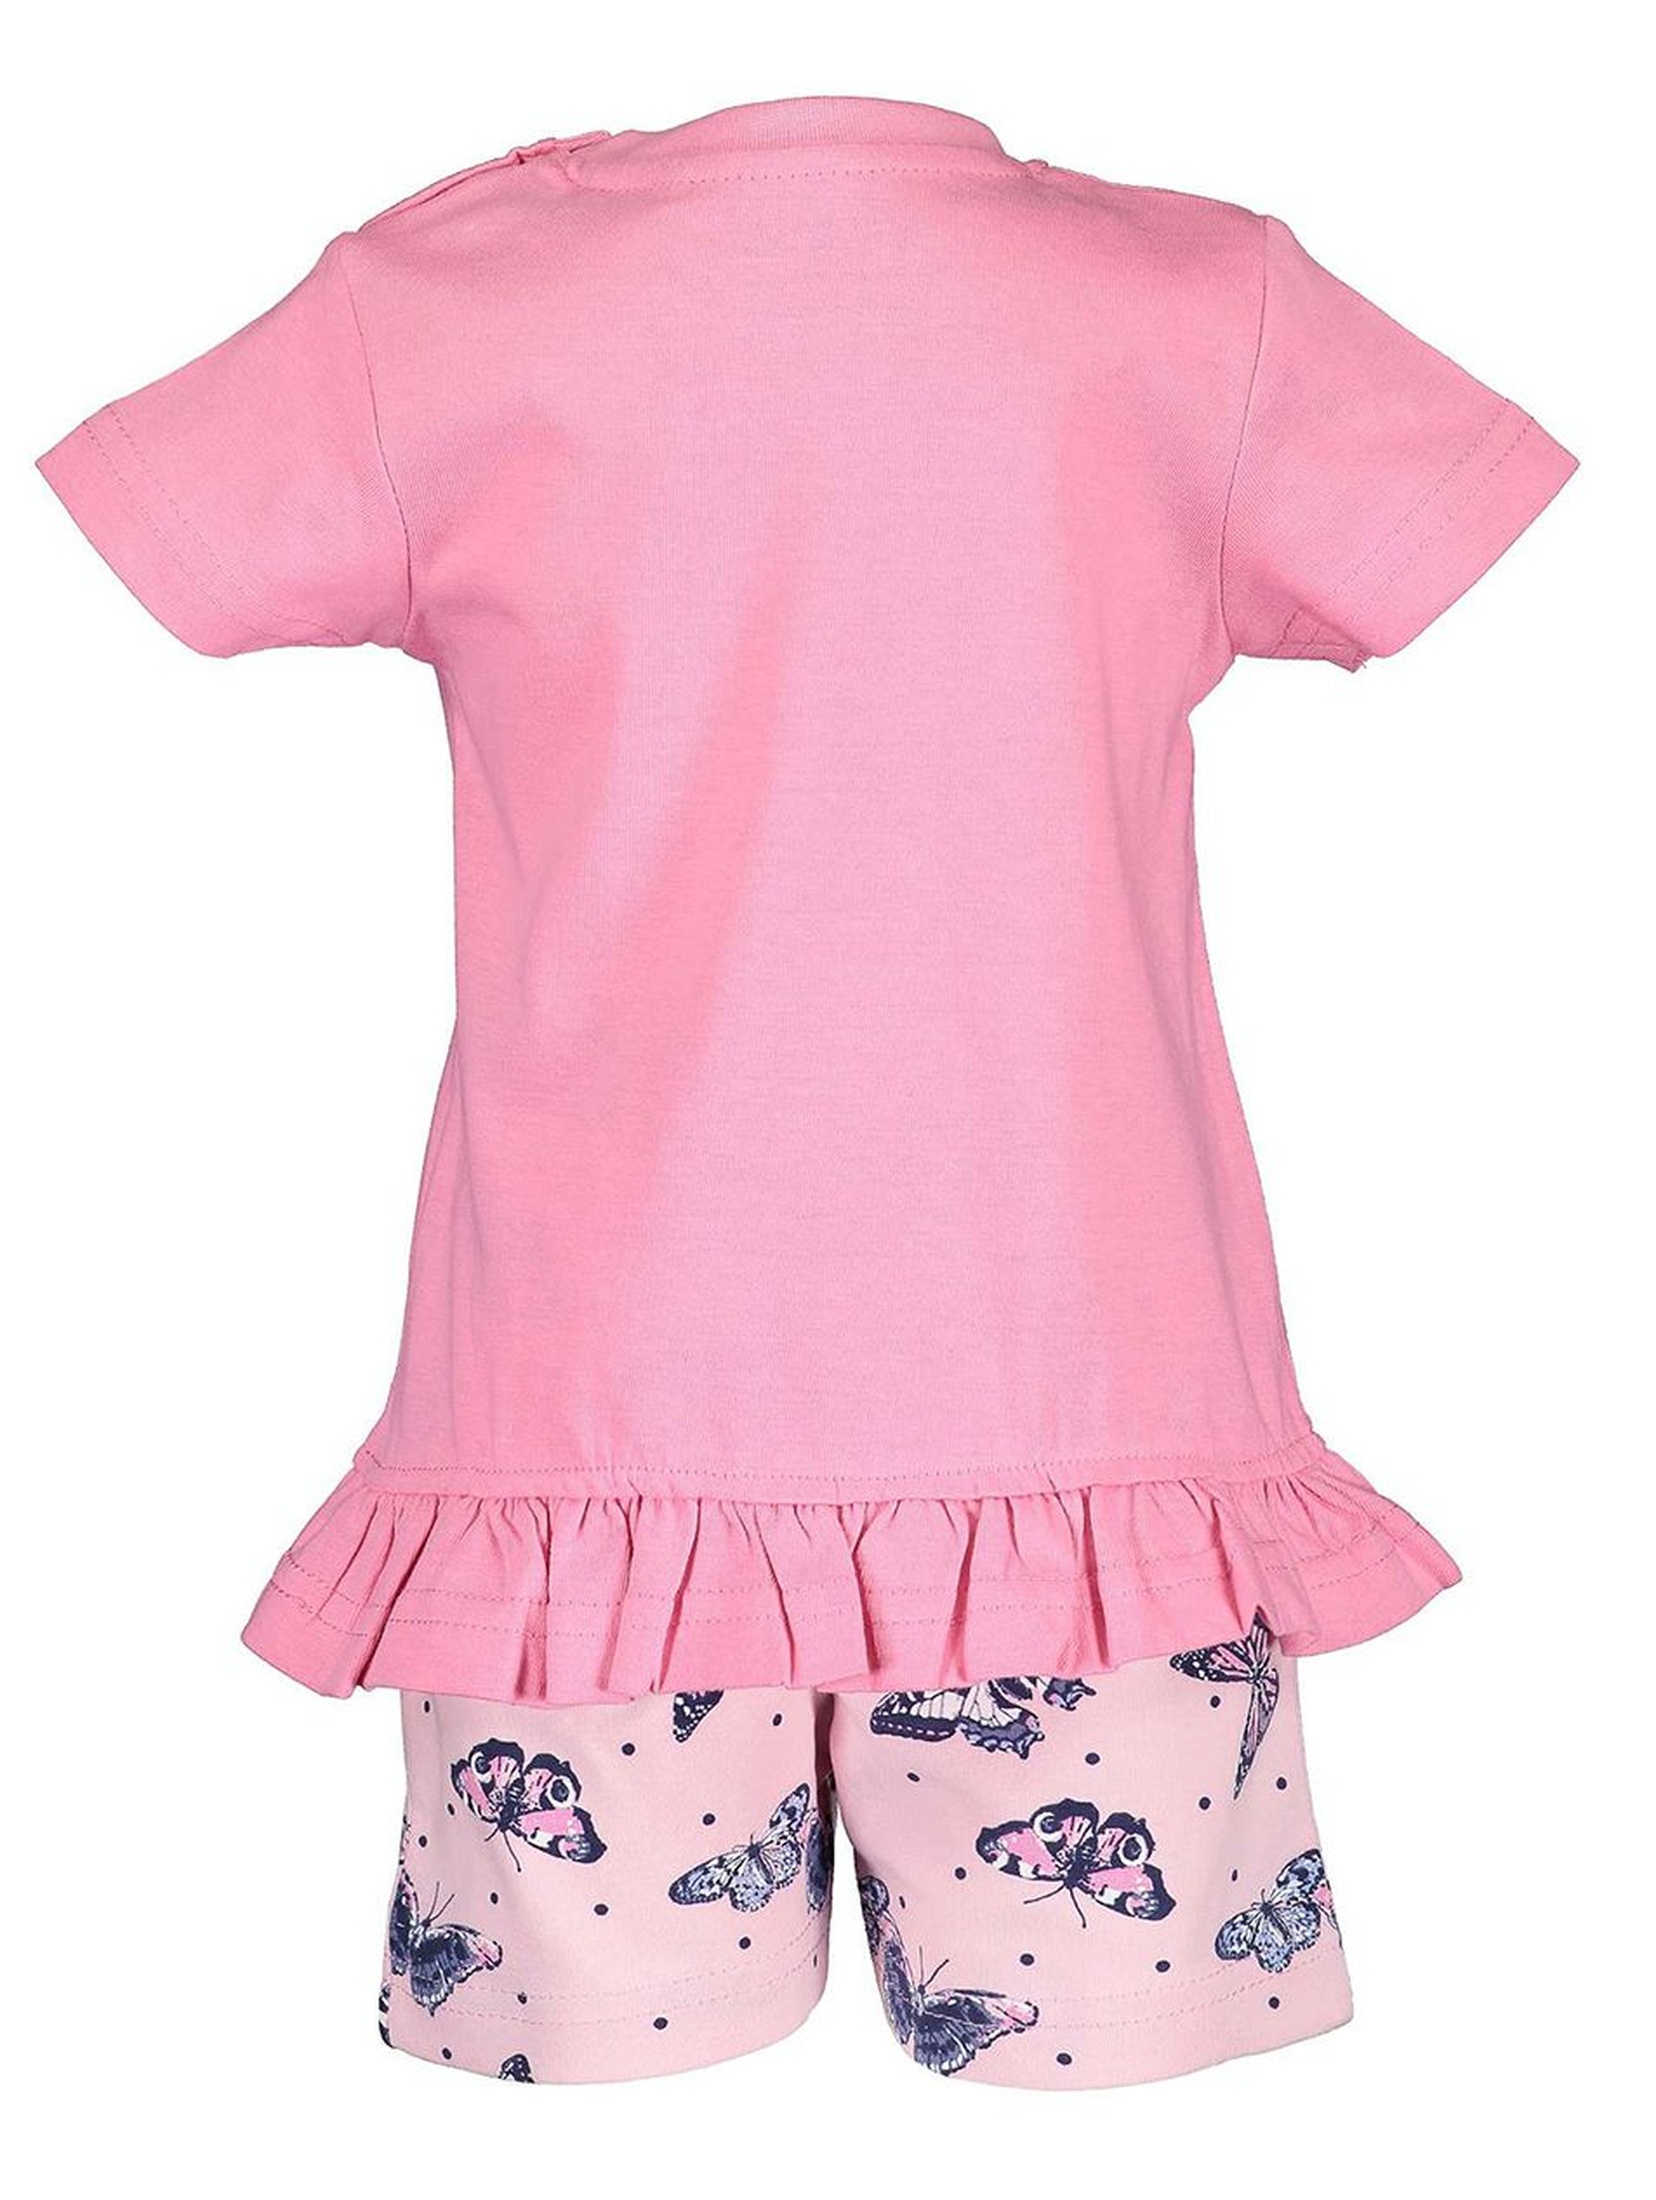 Komplet dziewczęcy różowy w motylki koszulka i spodenki